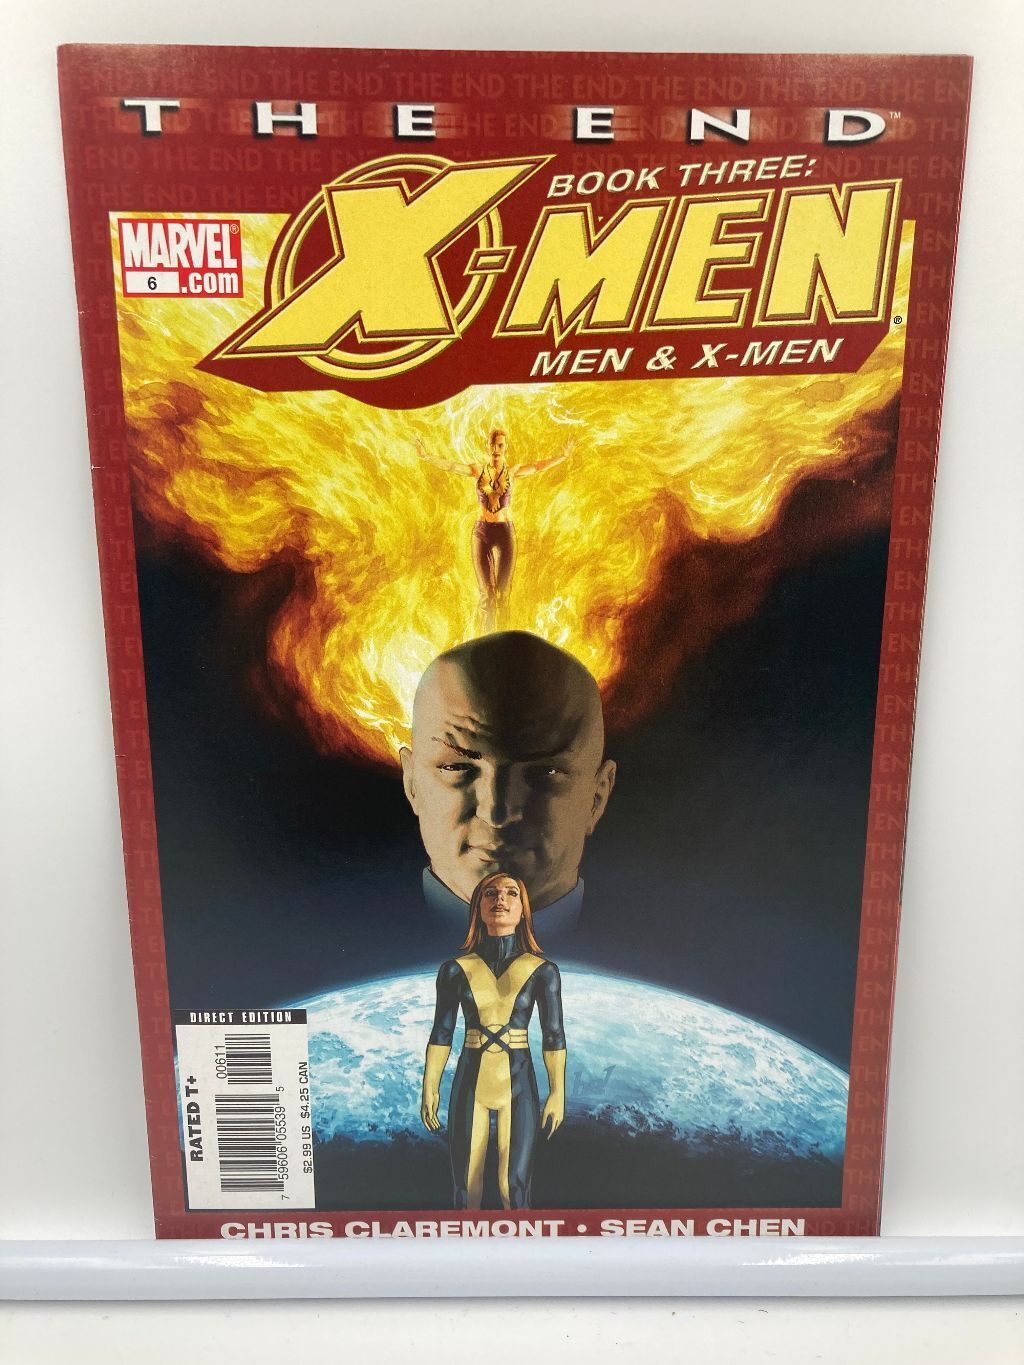 2006 Marvel Comics X-Men The End Book Three: Men & X-Men #6